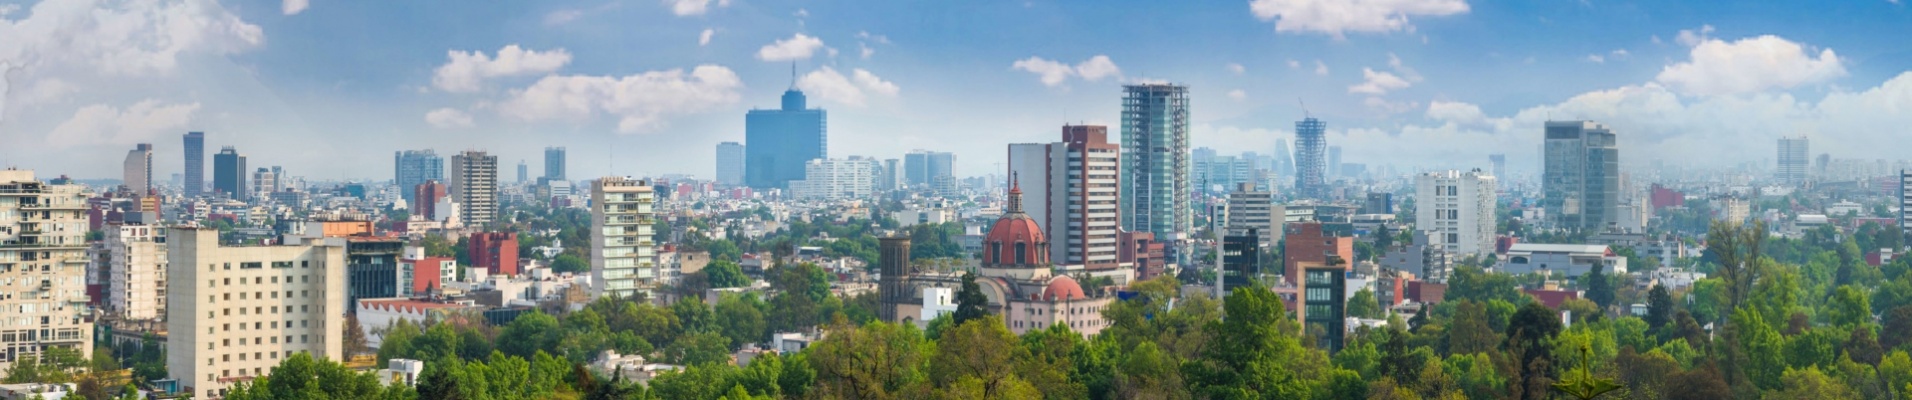 mexico-city-panorama